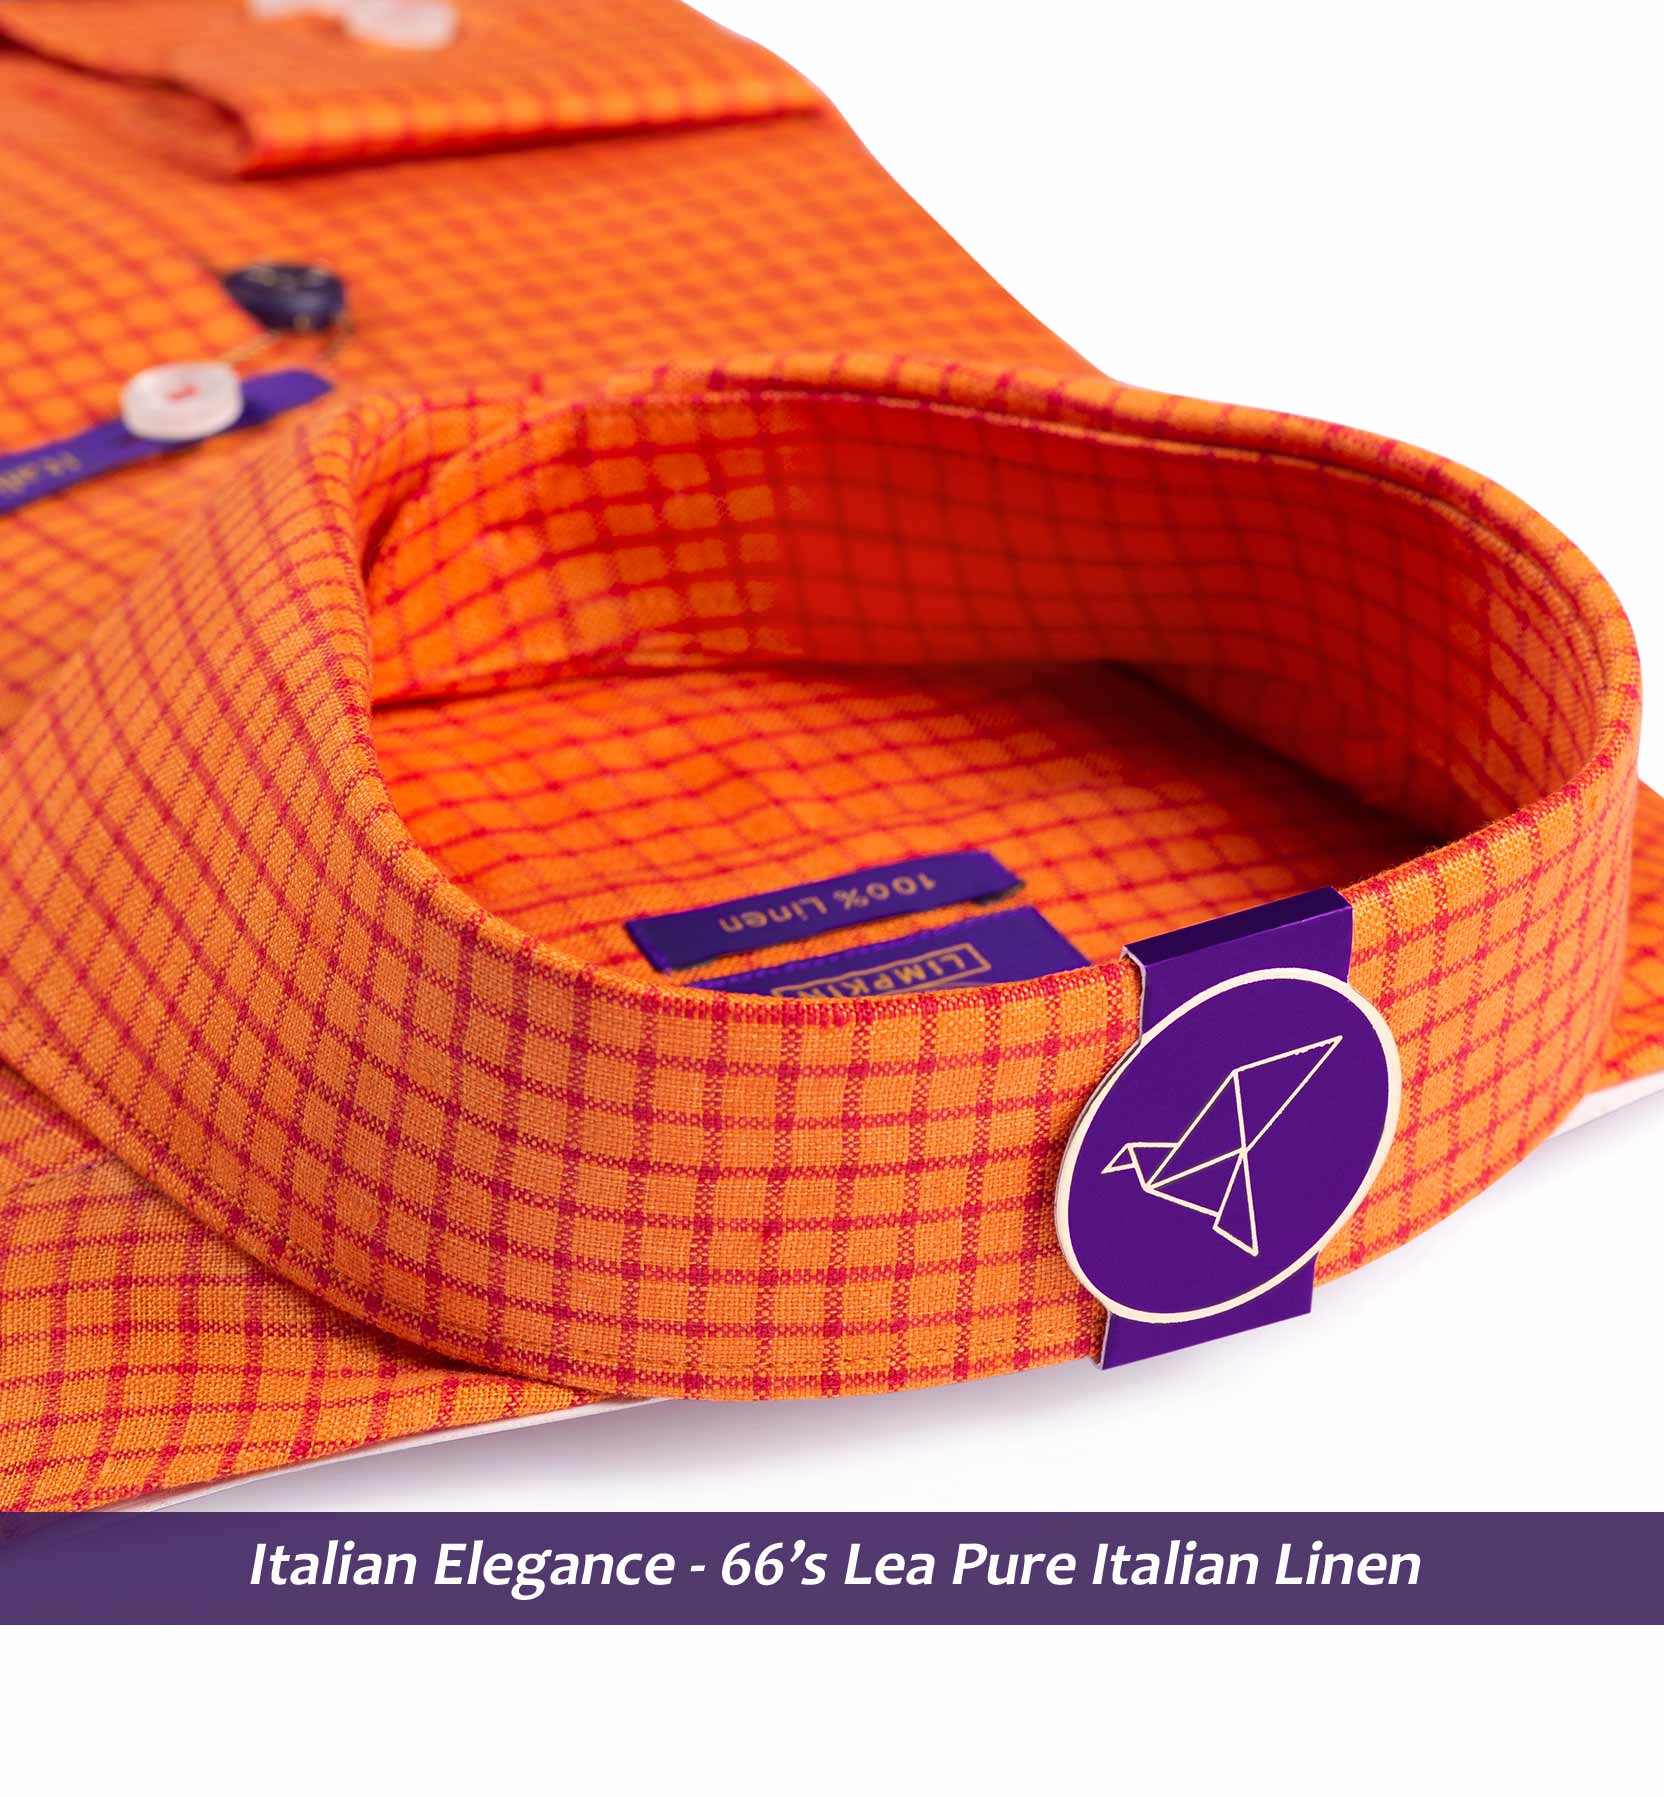 Burgos- Marmalade Orange & Coral Red Check- 66's Lea Pure Luxury Linen